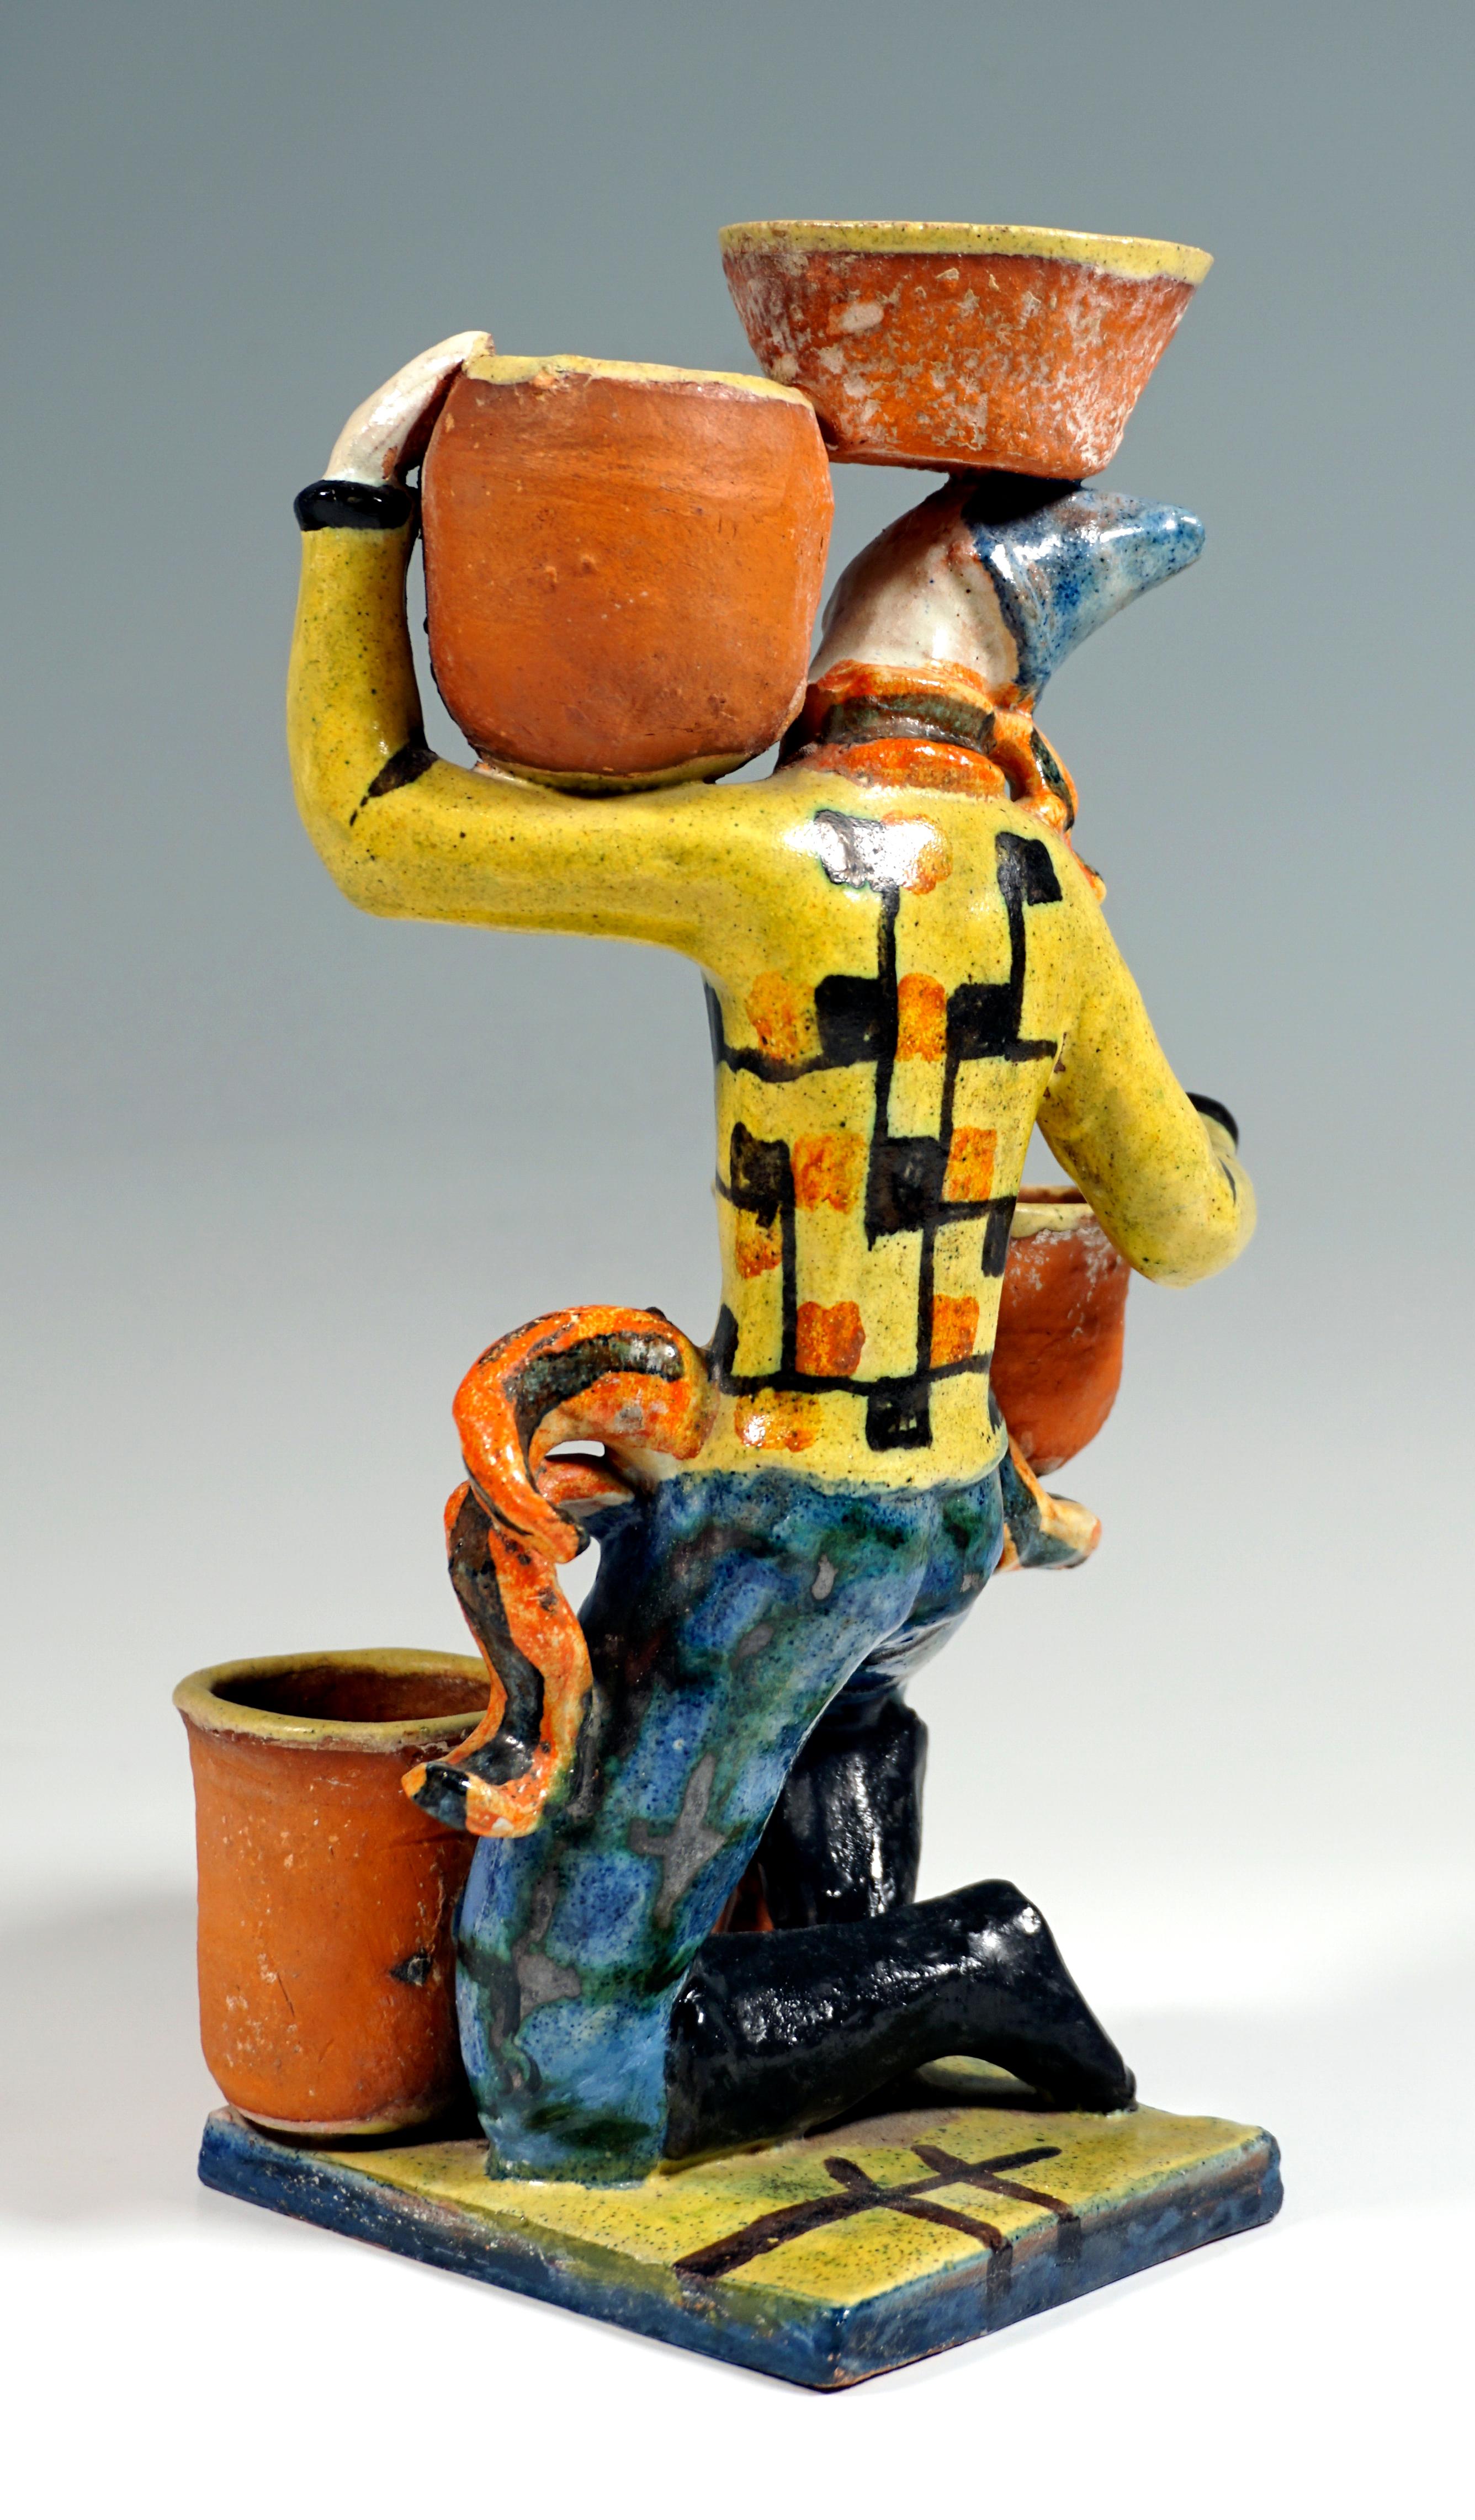 Expressionist Wiener Werkstaette Expressive Art Ceramics 'Cactus Carrier', by G. Baudisch 1927